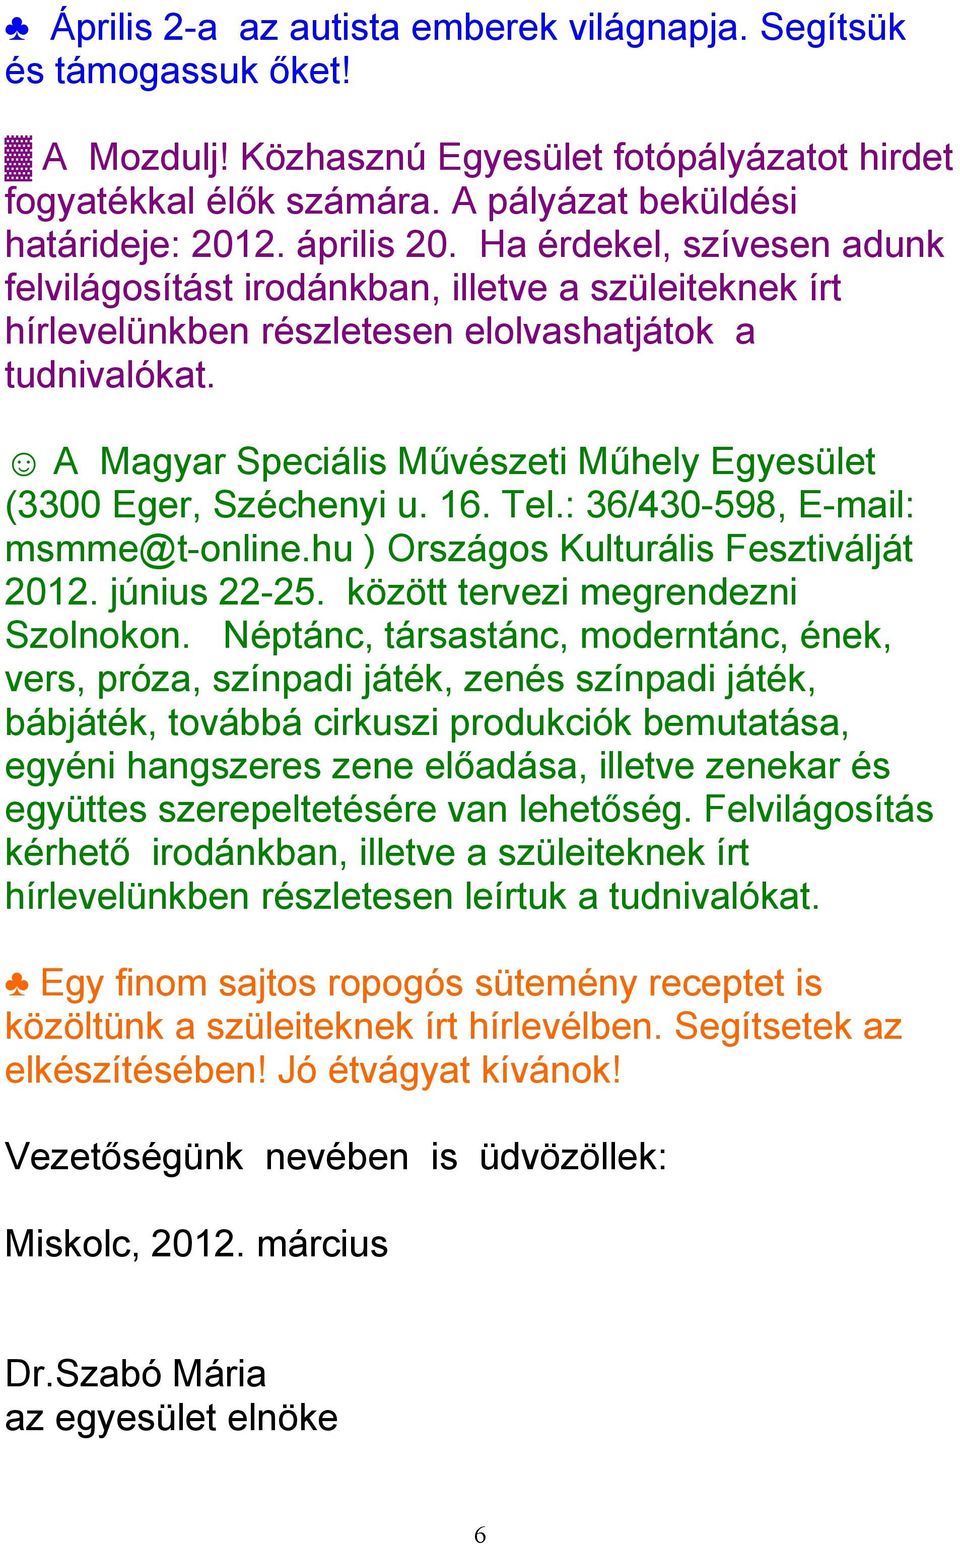 A Magyar Speciális Művészeti Műhely Egyesület (3300 Eger, Széchenyi u. 16. Tel.: 36/430-598, E-mail: msmme@t-online.hu ) Országos Kulturális Fesztiválját 2012. június 22-25.